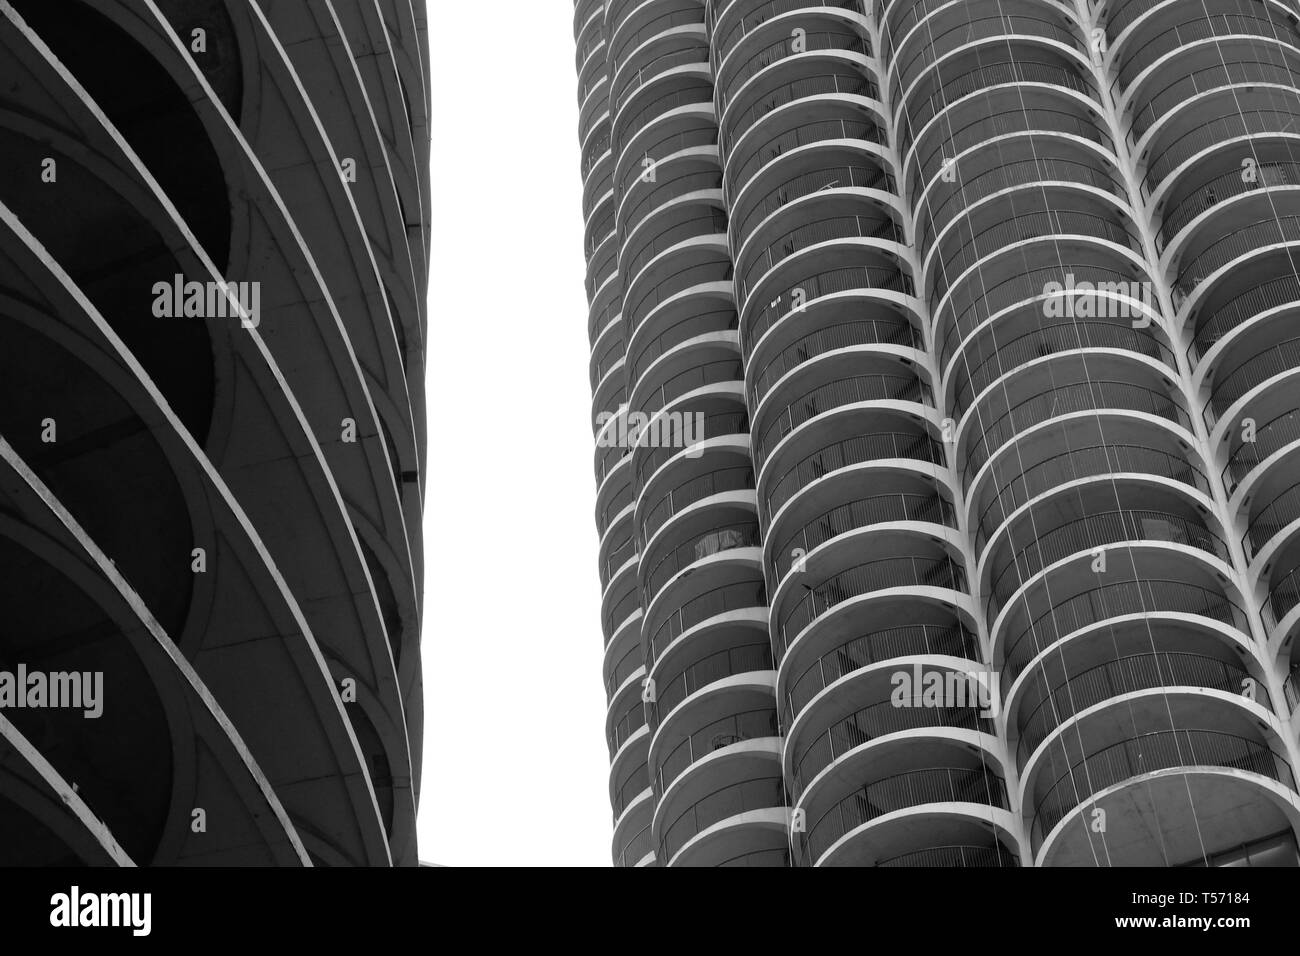 Marina torri della città, celebre architettura di Chicago landmark lungo il fiume Chicago nel nord del fiume Chicago, Illinois in bianco e nero Foto Stock